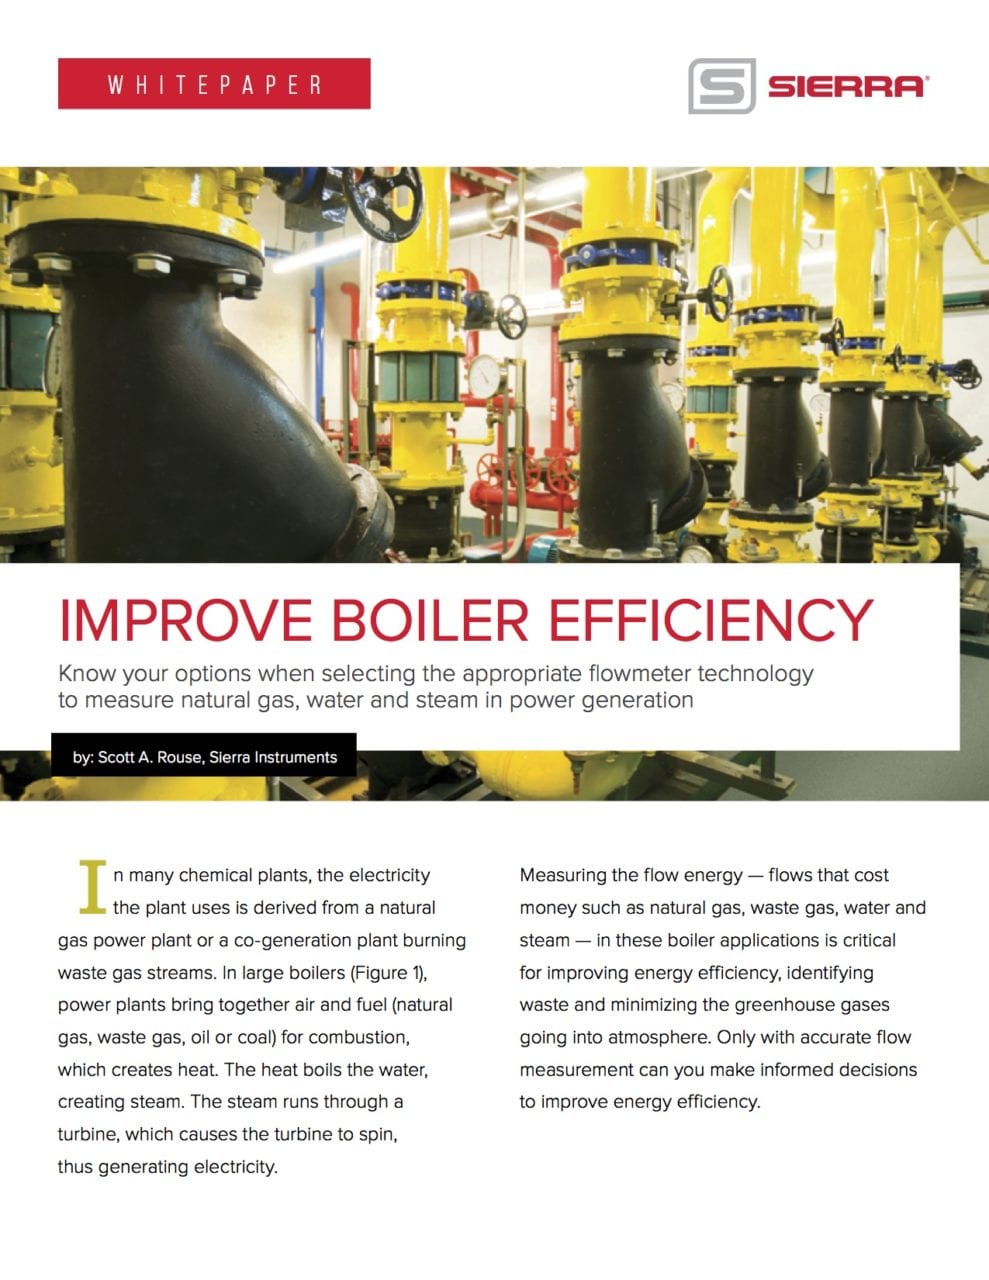 Sierra – Improve Boiler Efficiency